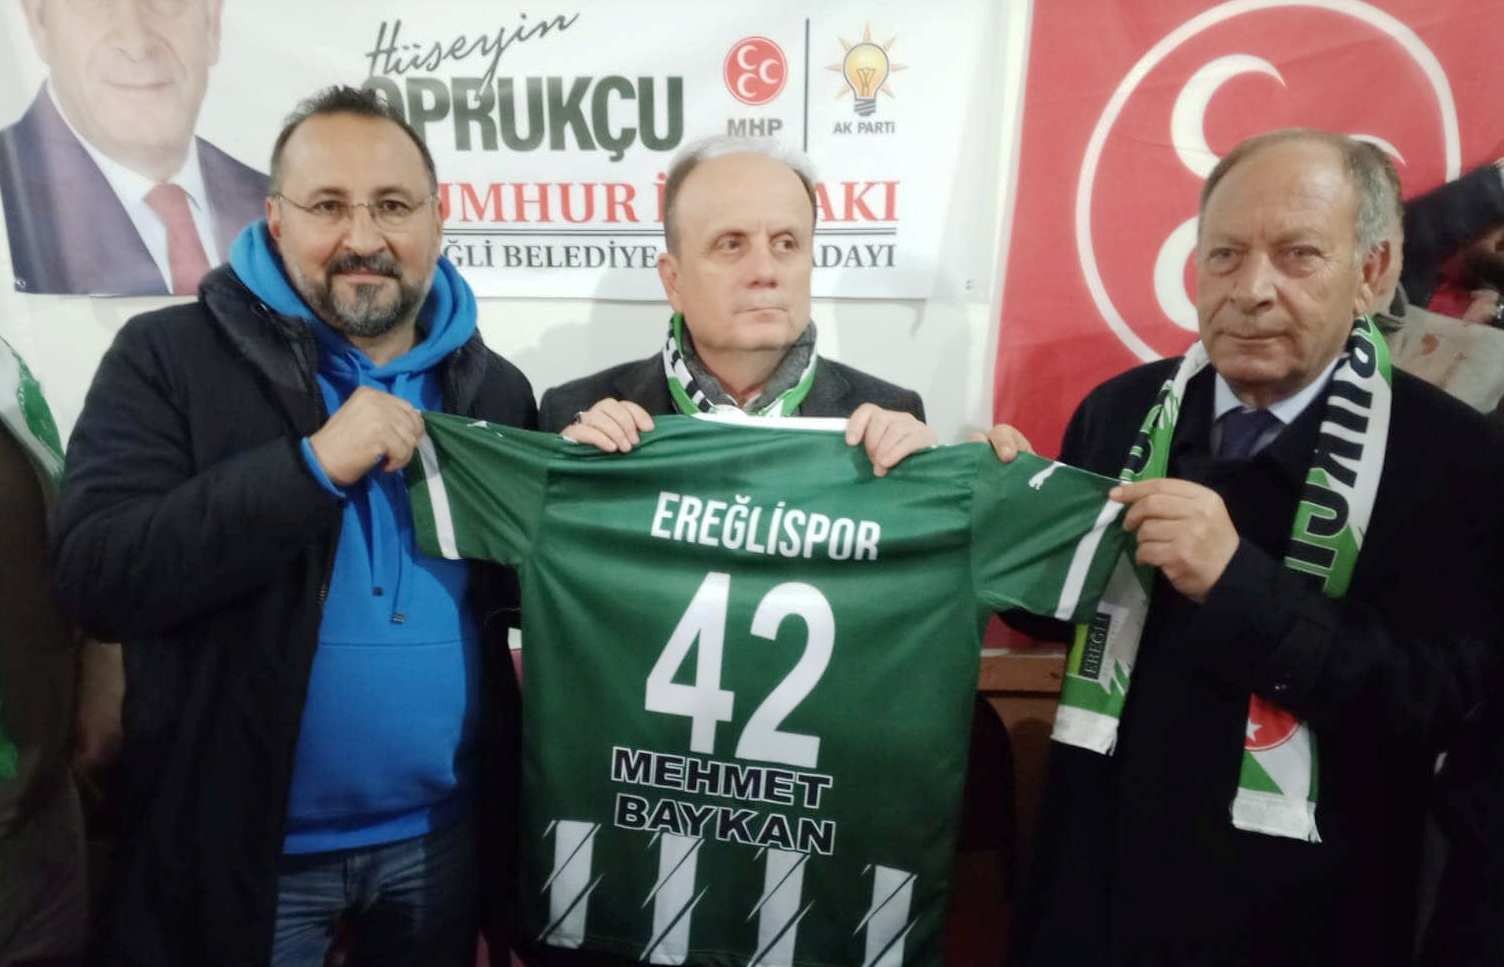 Ereğlispor’un Mehmet Baykan’dan isteği var